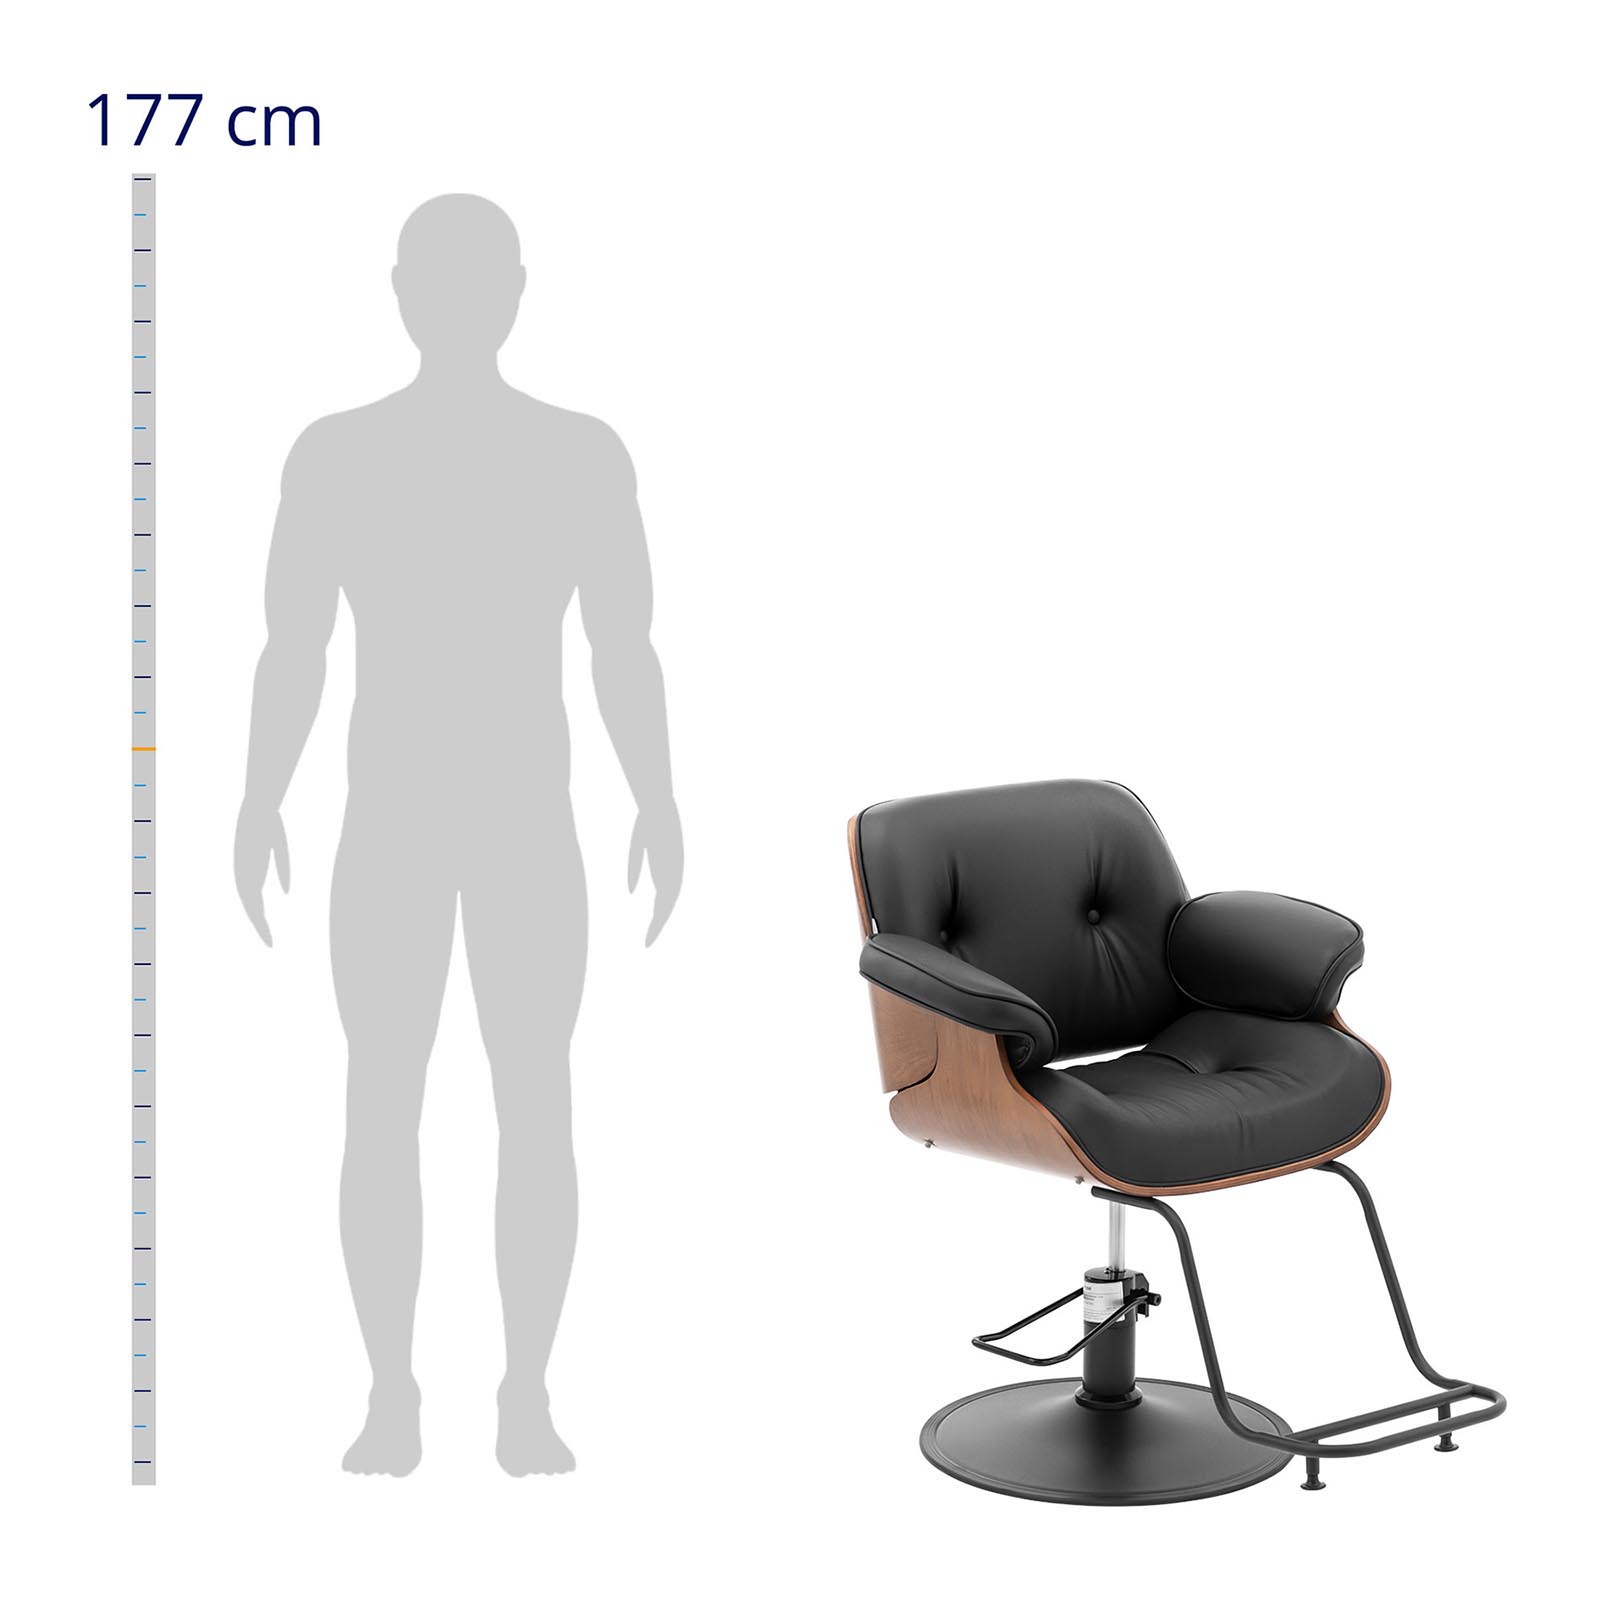 Fotel fryzjerski z podnóżkiem - 830-960 mm - 200 kg - Czarny